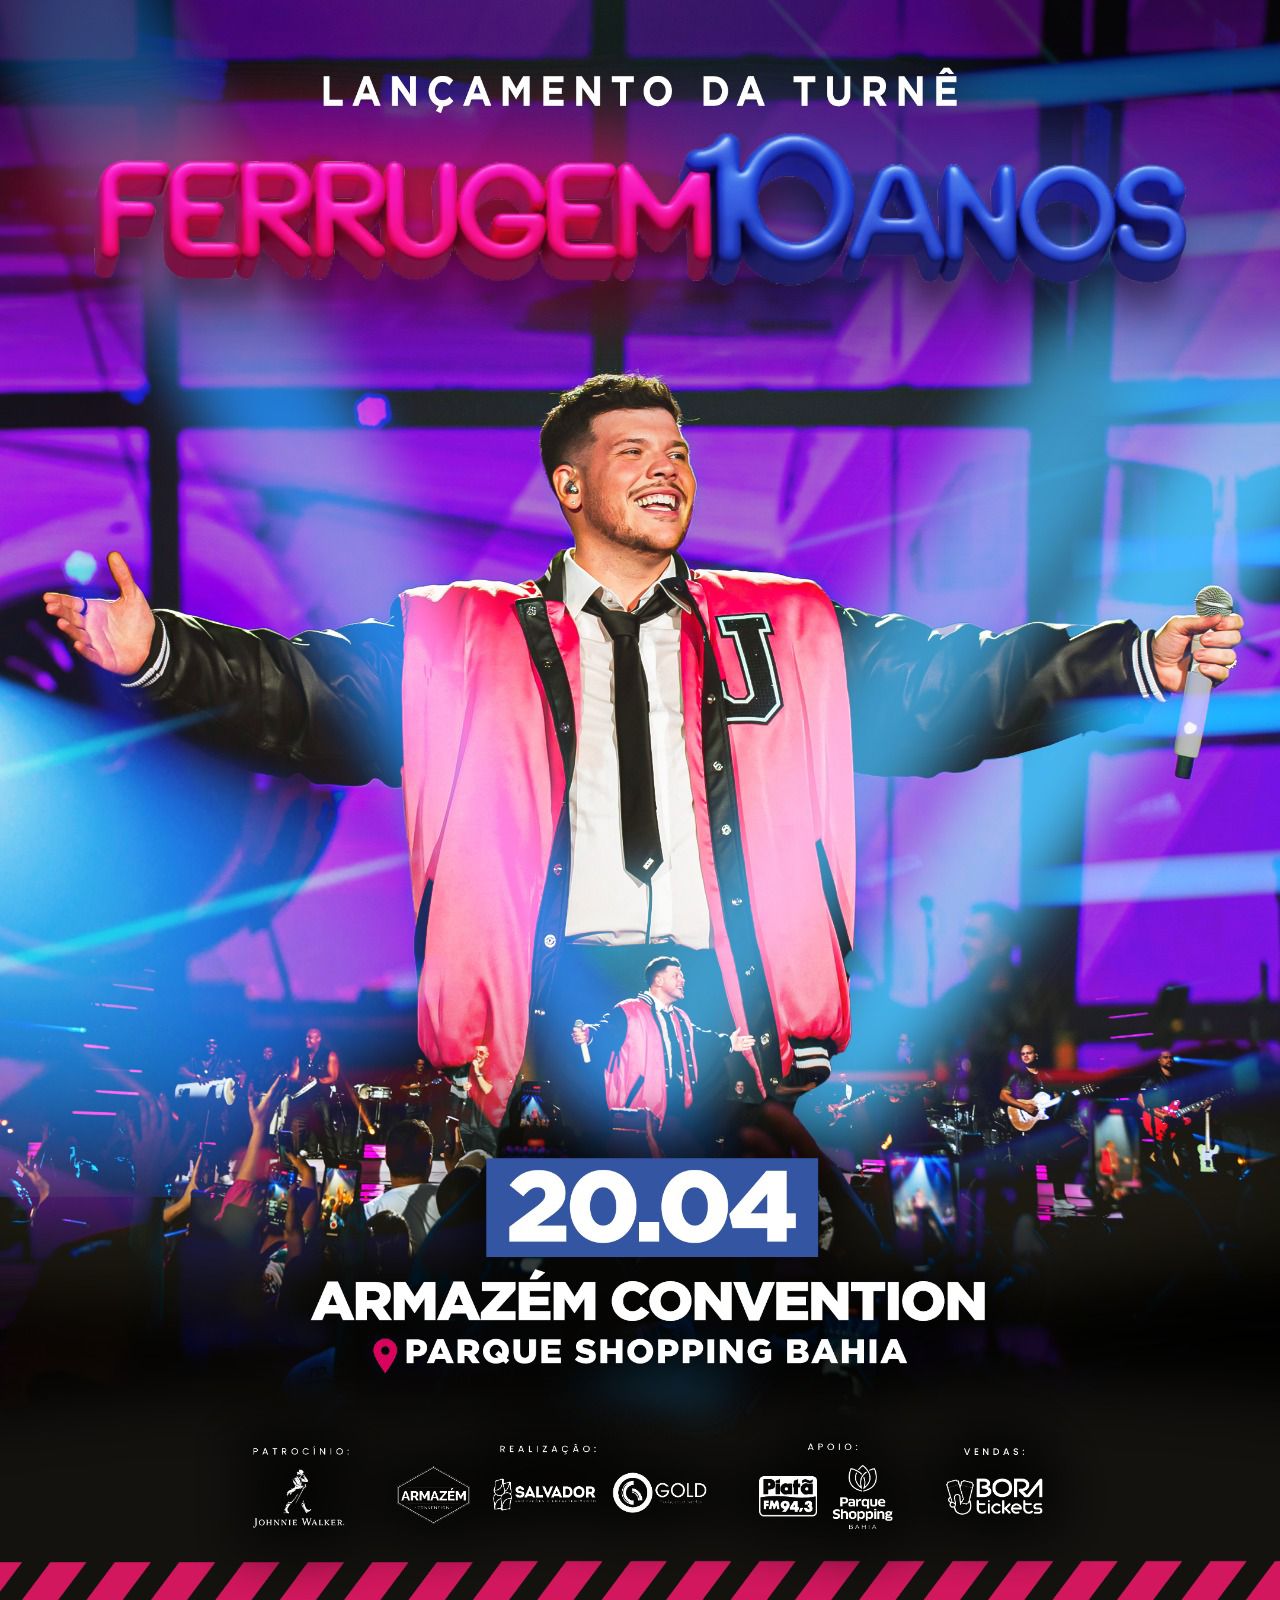 Ferrugem reunirá os maiores sucessos de sua carreira em turnê comemorativa 2